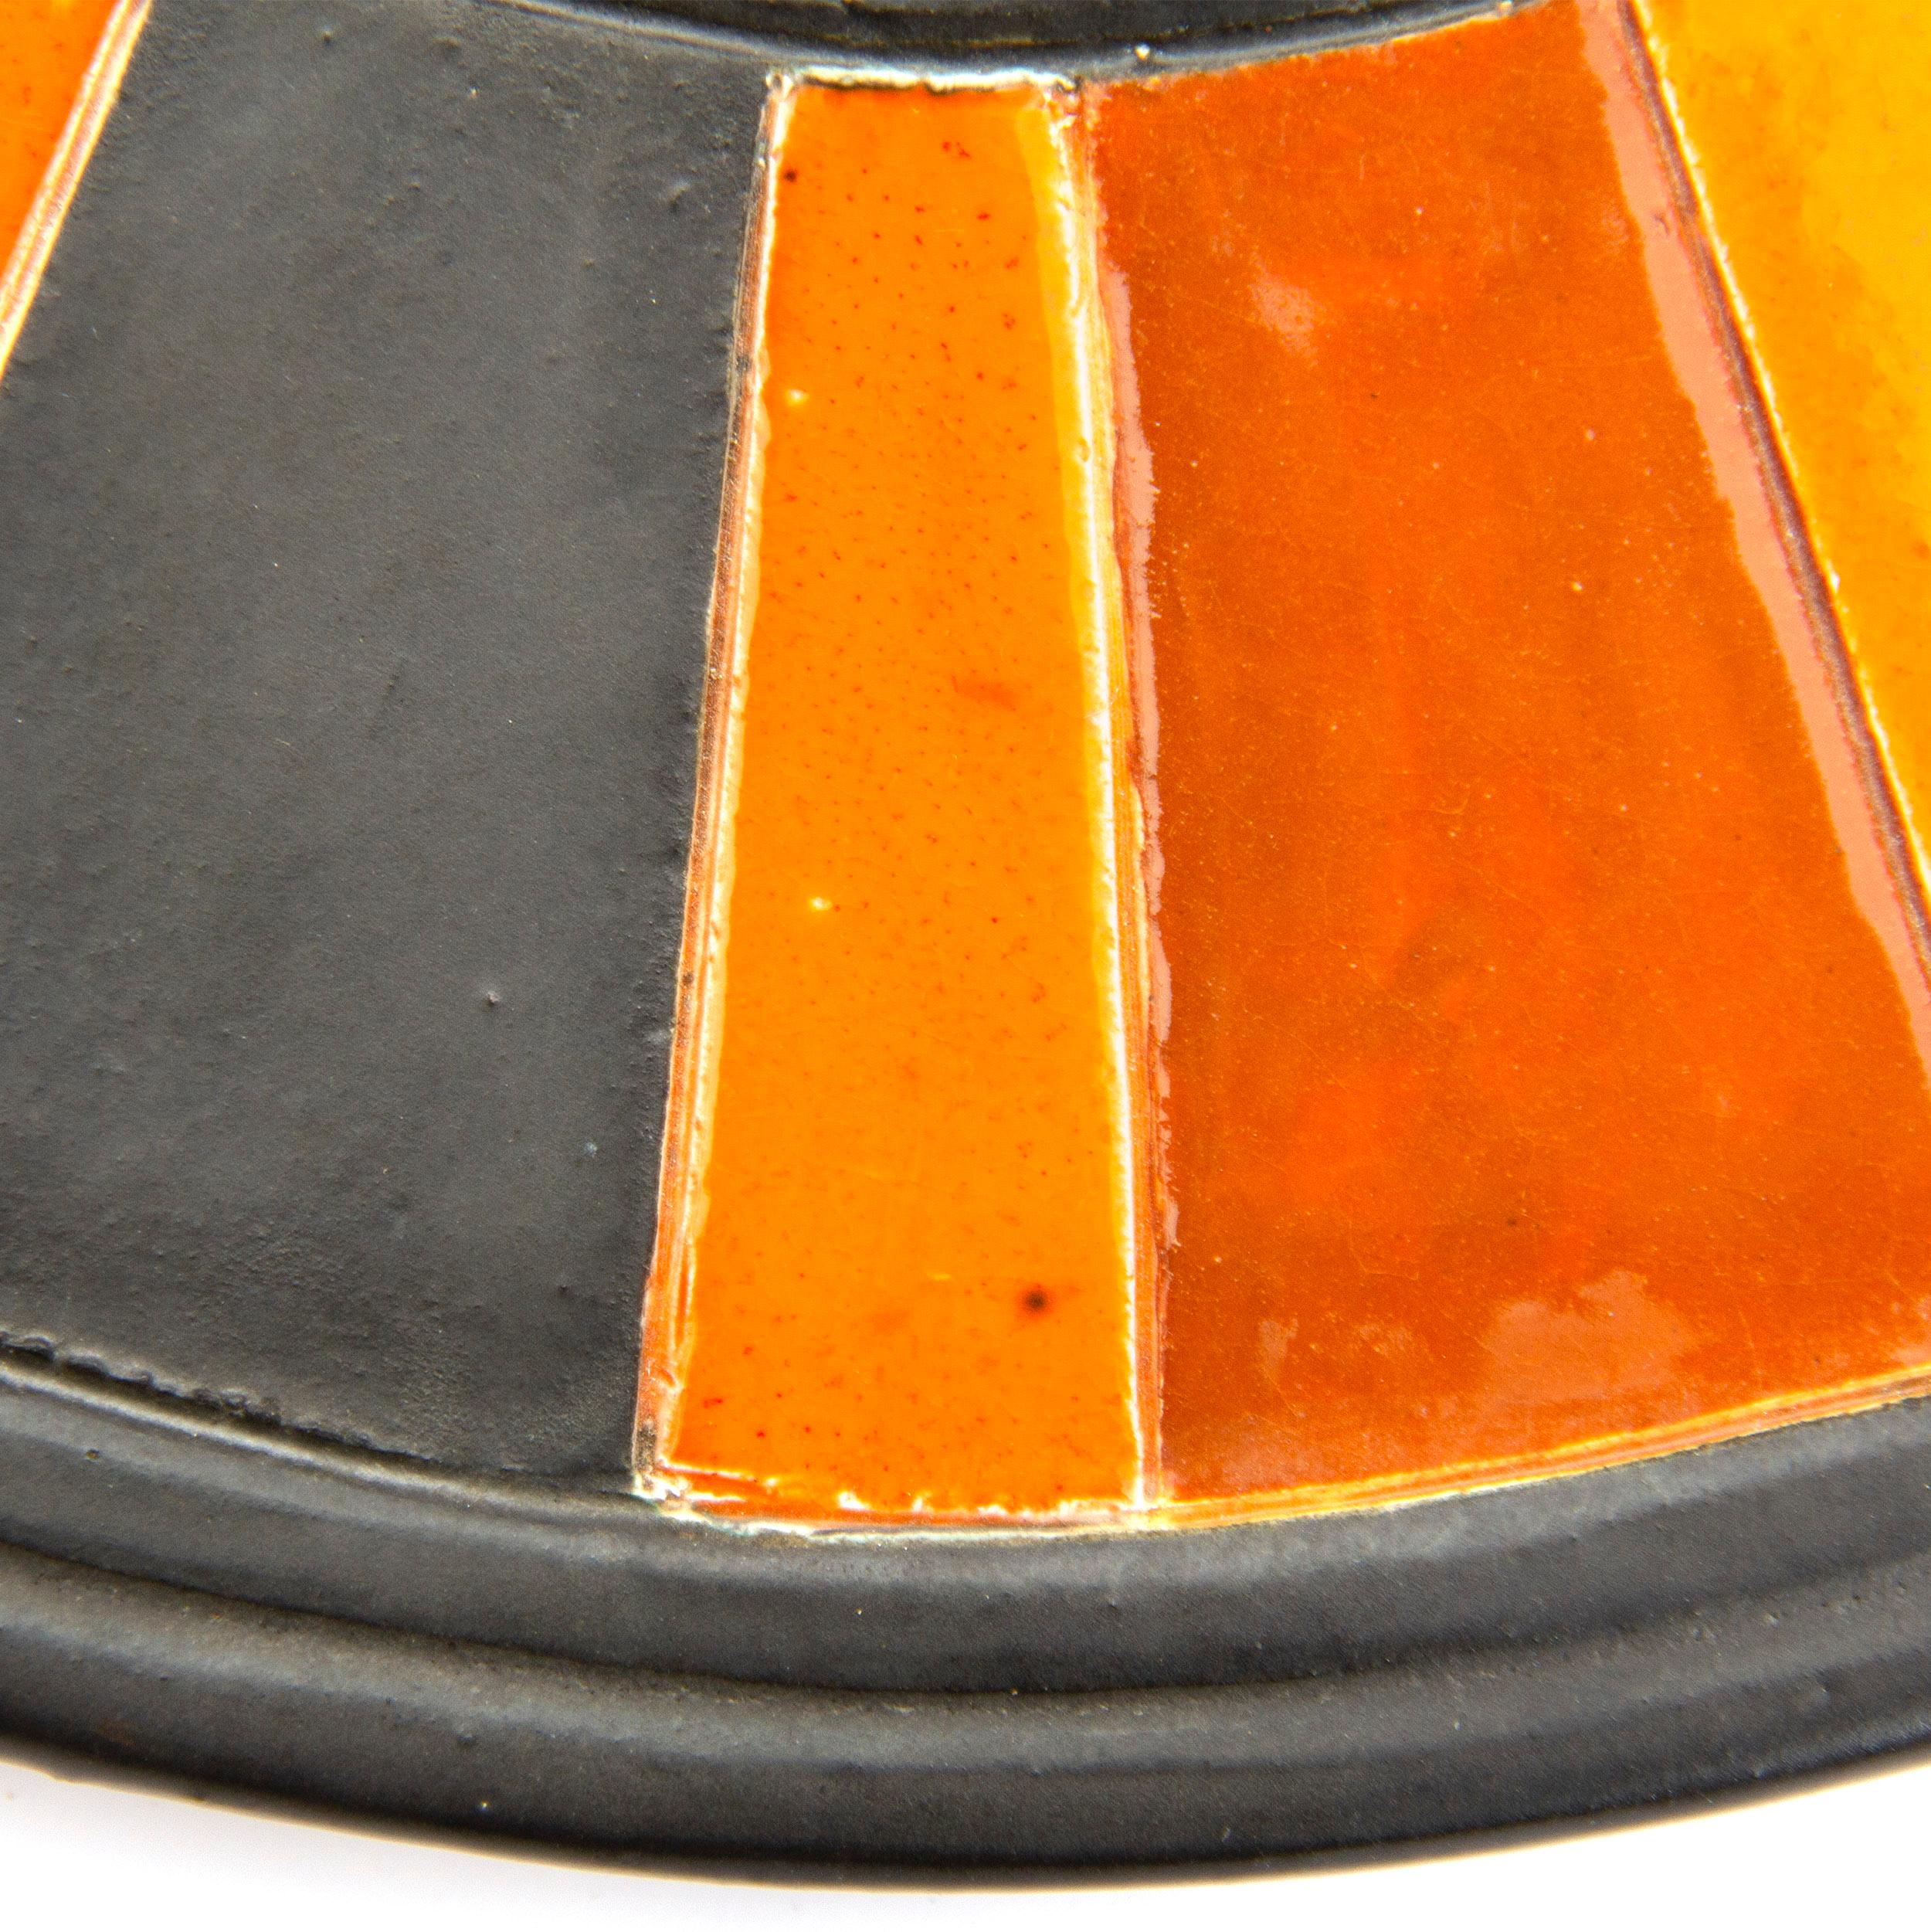 Miroir rond en céramique avec des rayures orange, rouges et brunes.